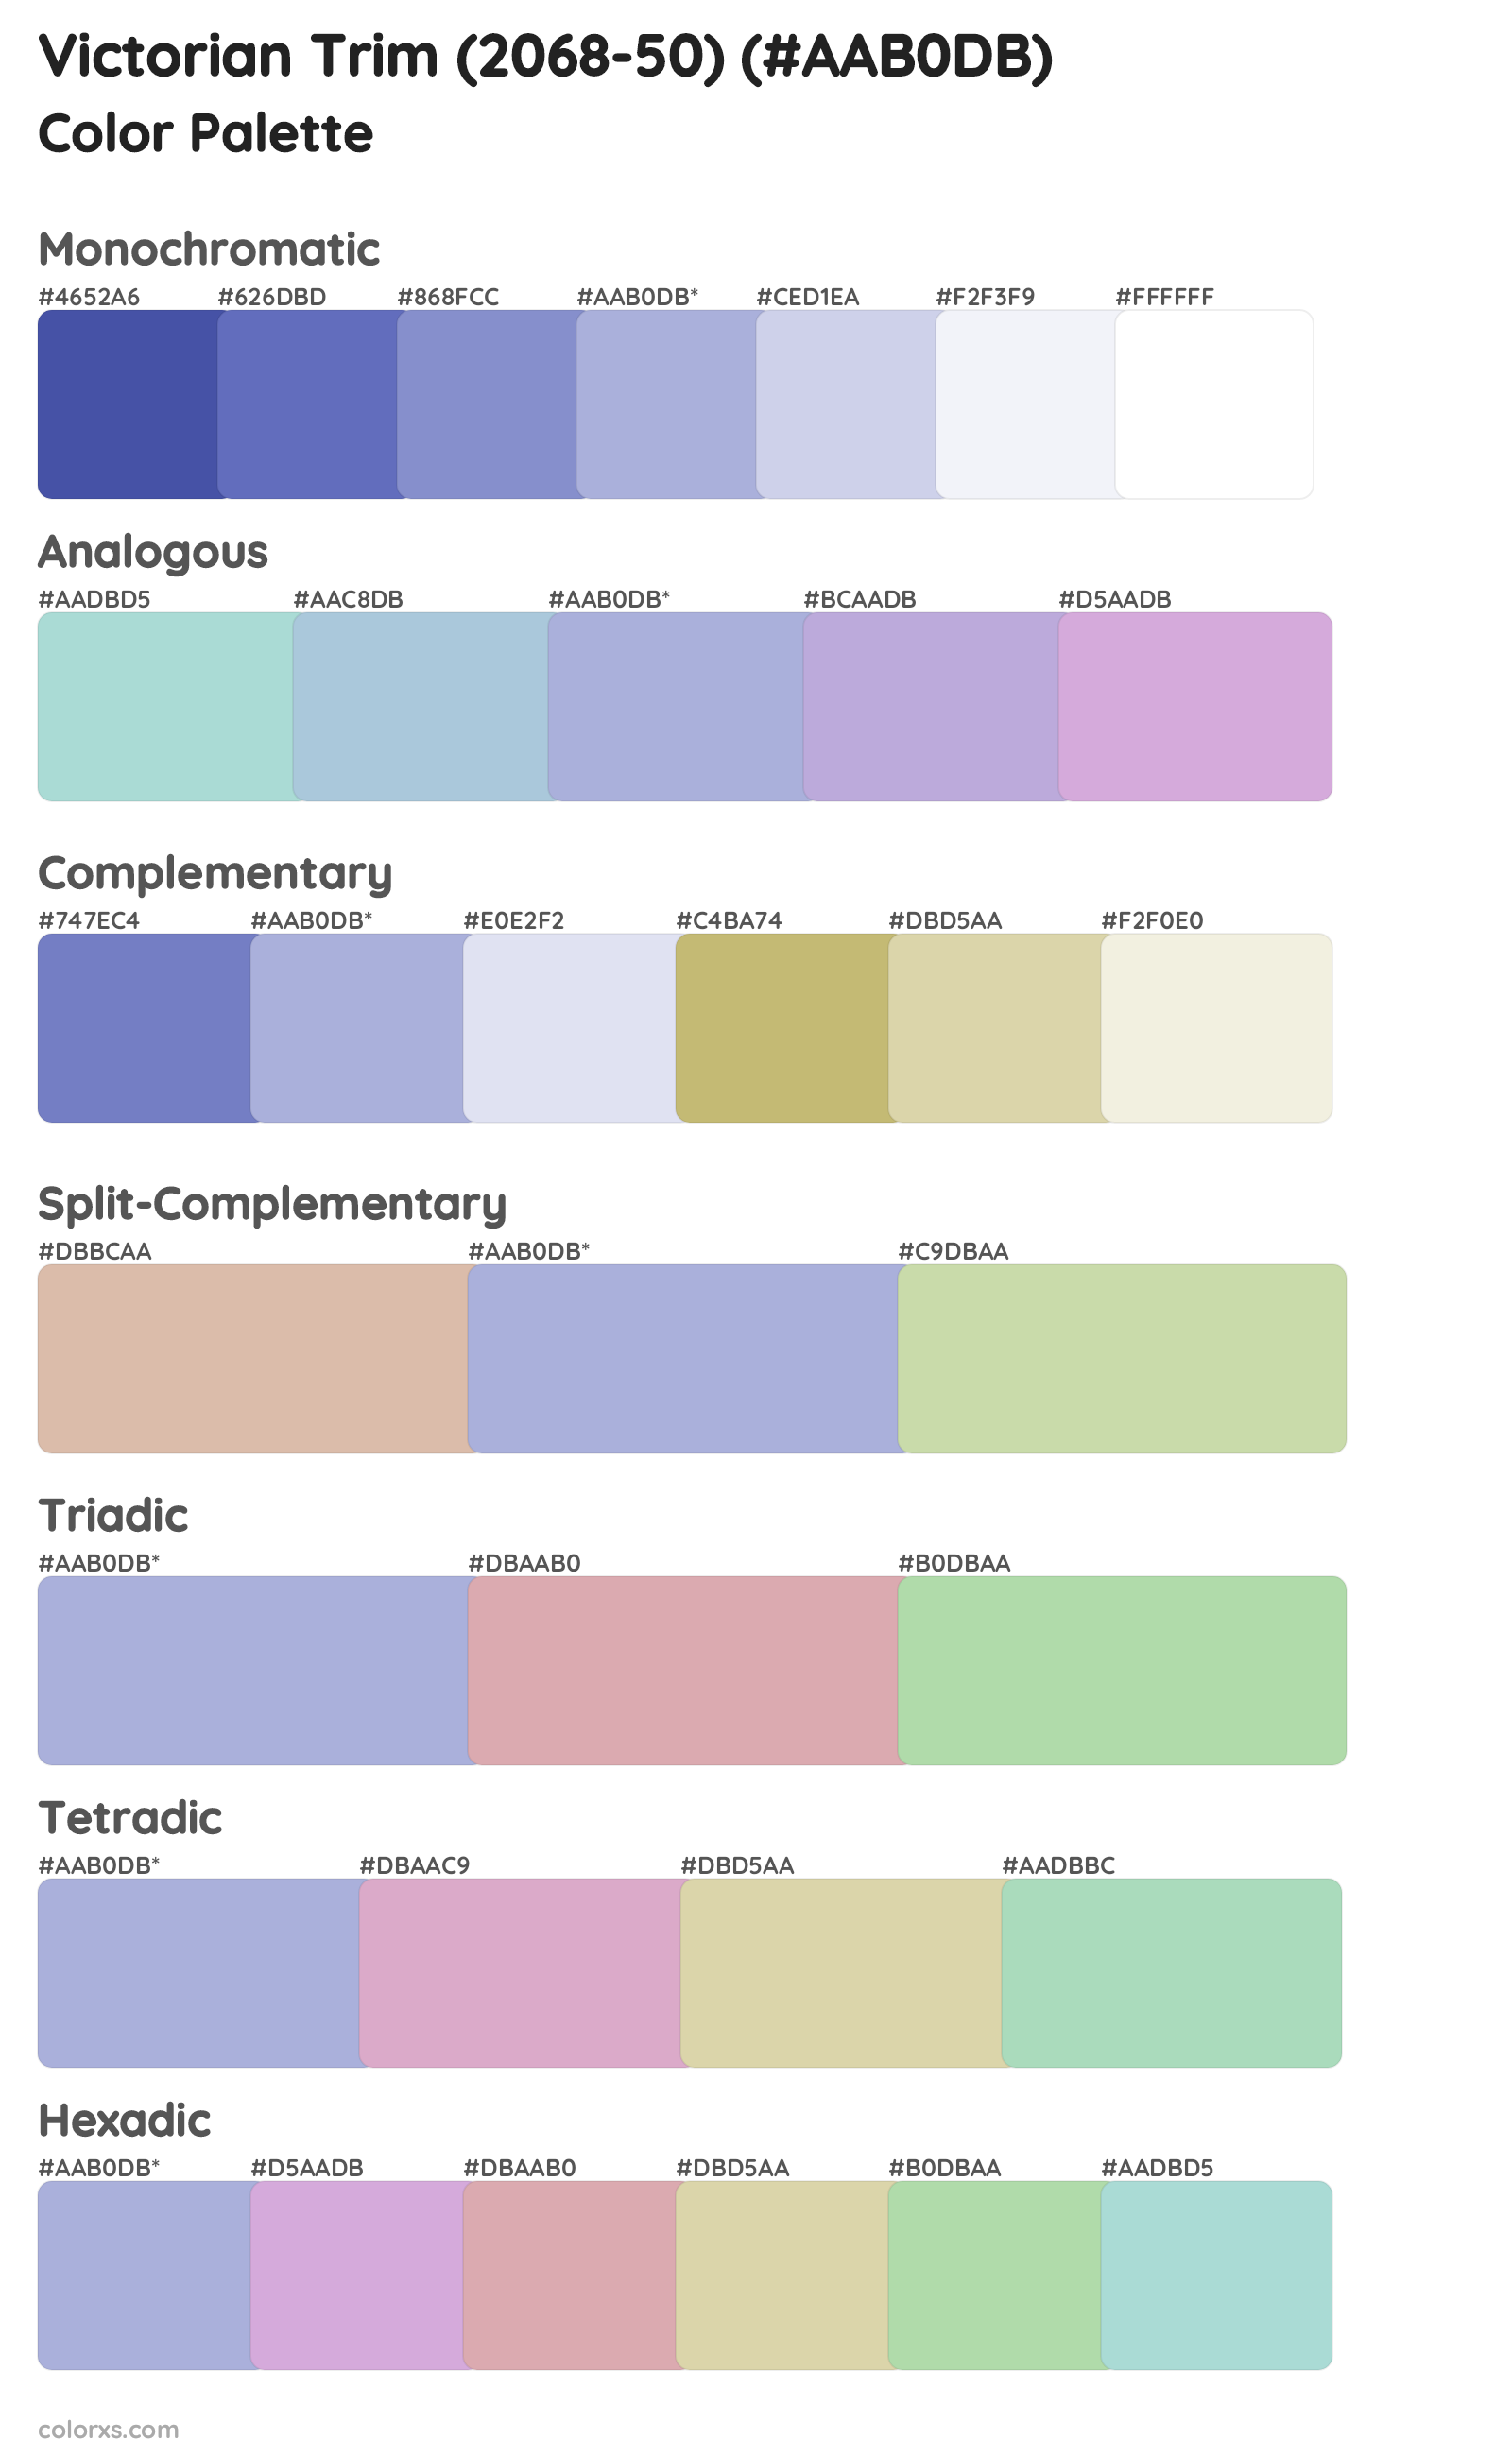 Victorian Trim (2068-50) Color Scheme Palettes